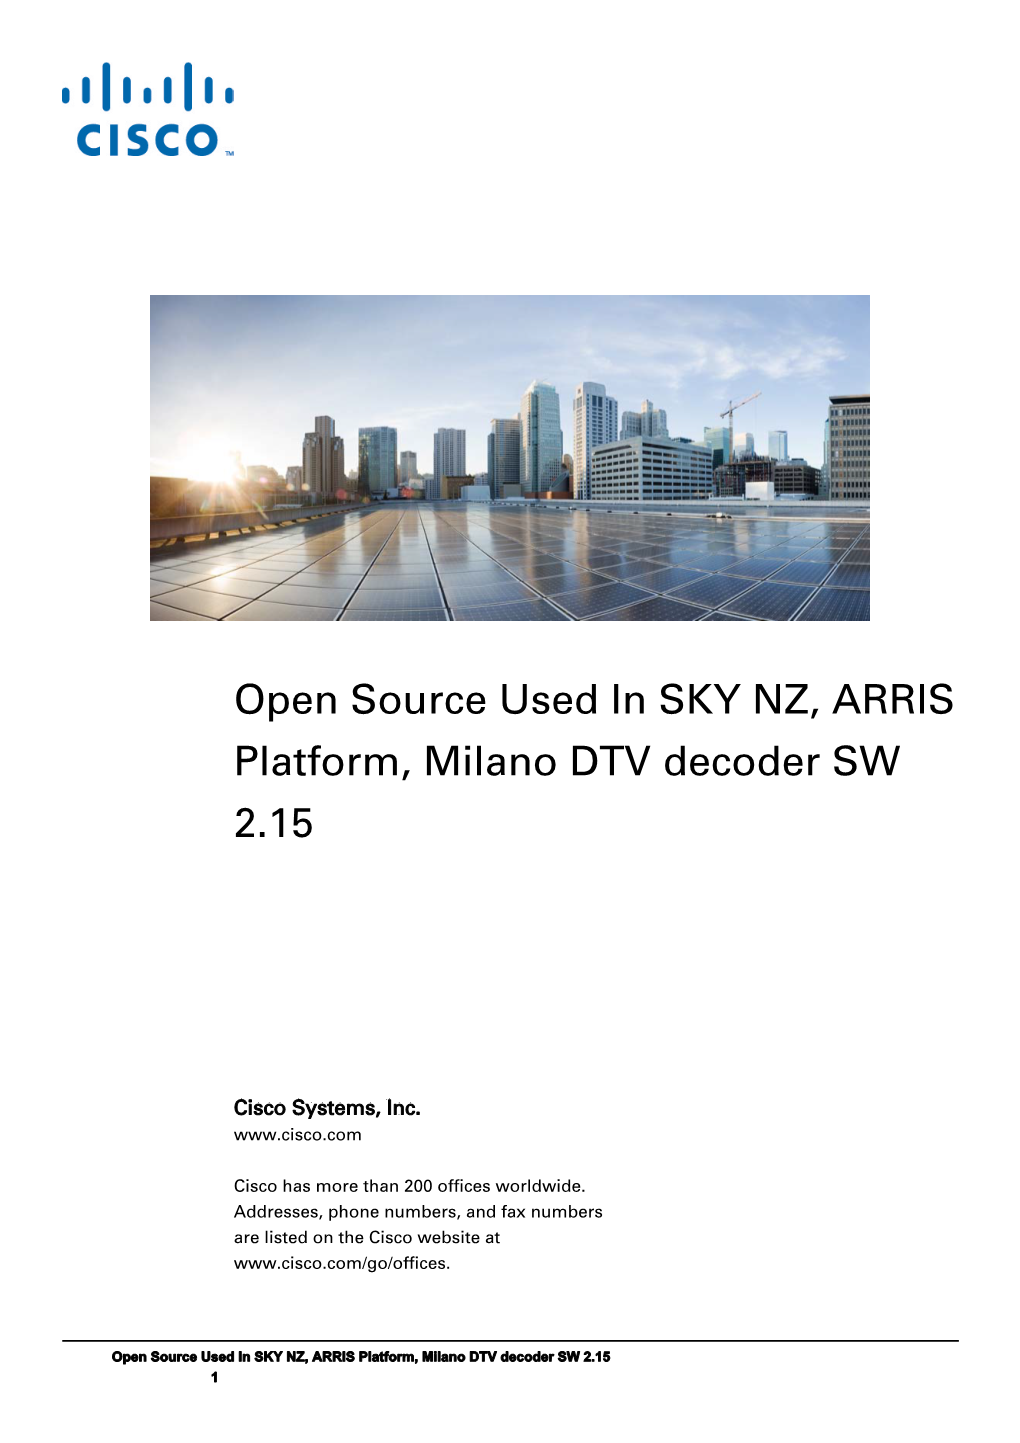 Open Source Used in SKY NZ, ARRIS Platform, Milano DTV Decoder SW 2.15